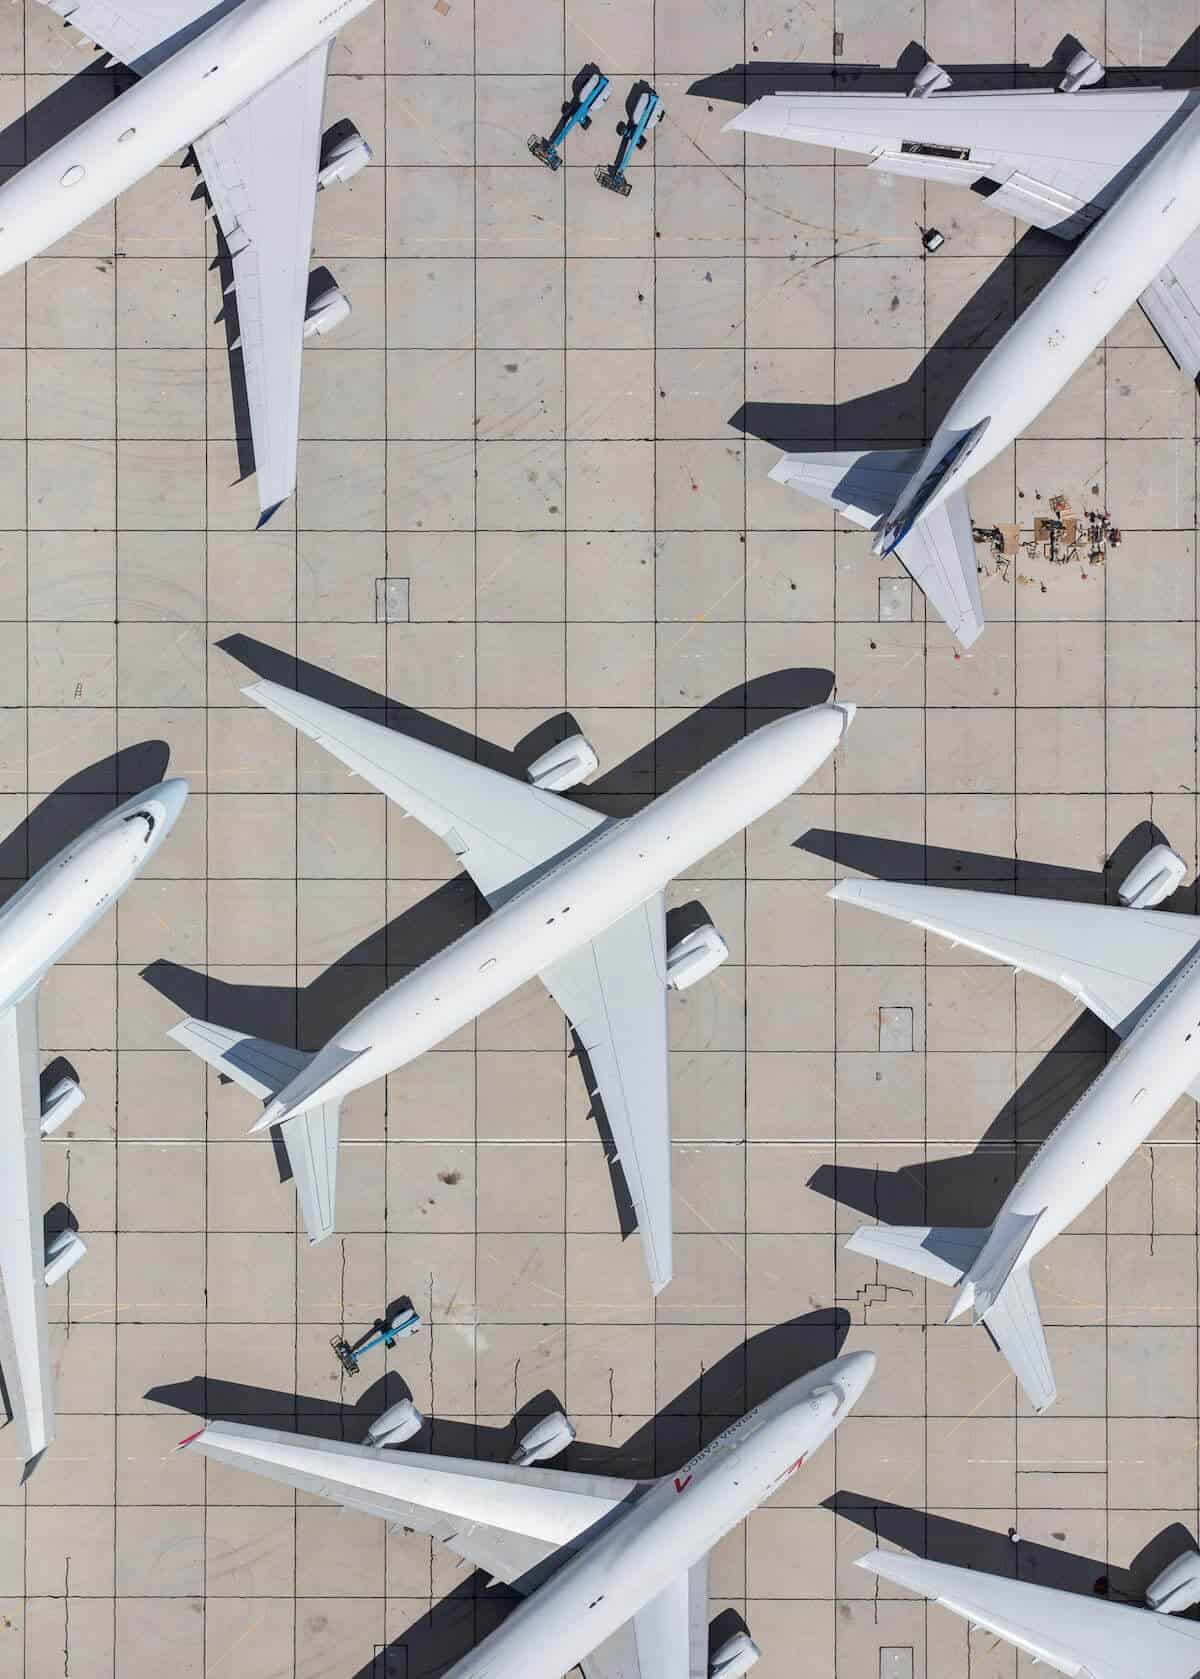 Letecké fotografie zachytené z vrtuľníka odhaľujúce ohromujúcu symetriu letísk - mike kelley airport photography 14 - Letecké fotografie zachytené z vrtuľníka odhaľujúce ohromujúcu symetriu letísk